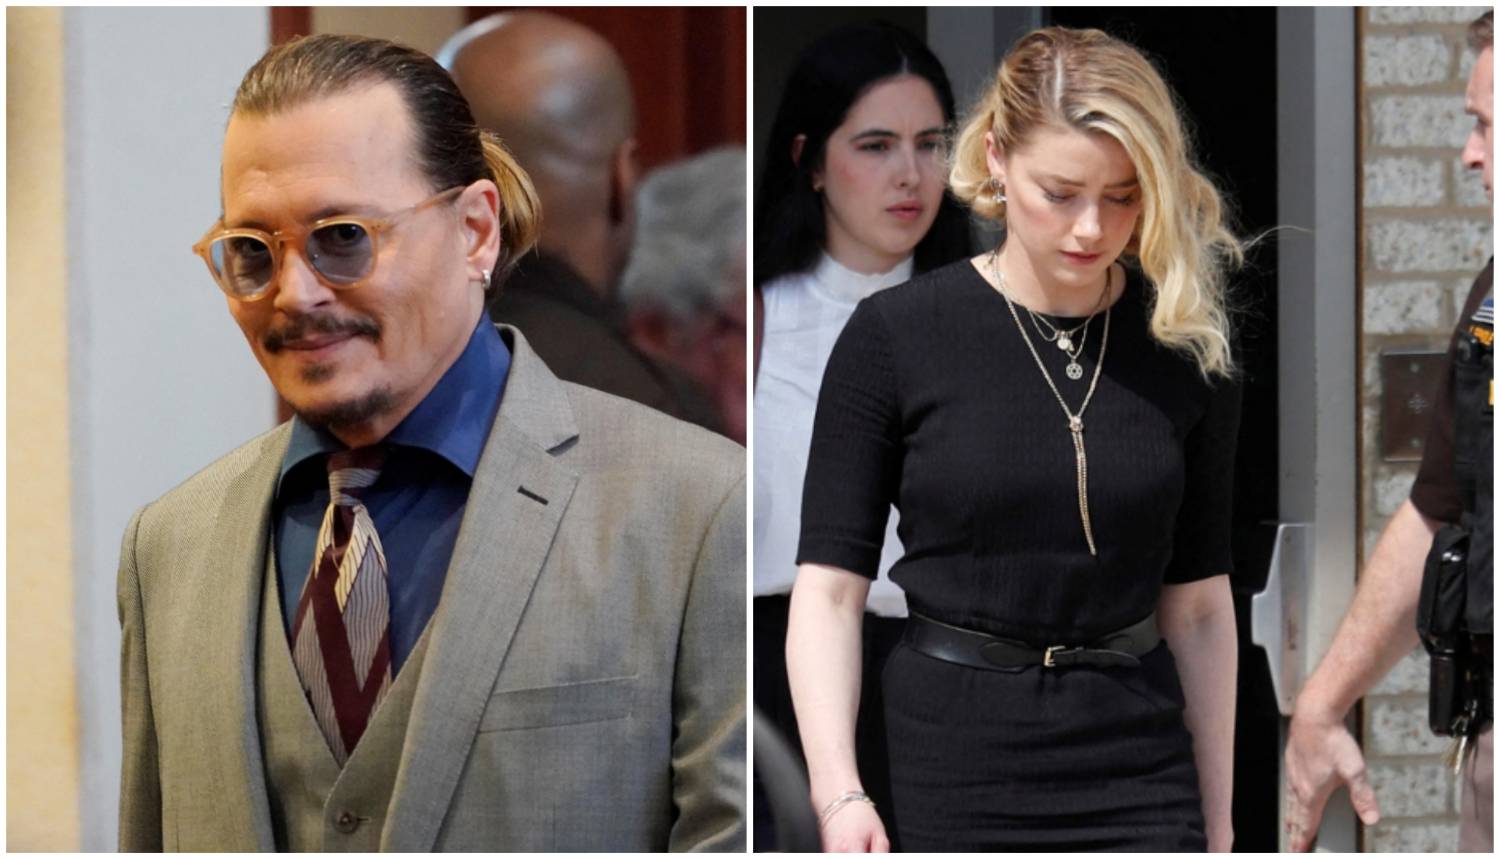 Procurili novi detalji iz slučaja Depp i Amber, uključuju njezine gole slike i vulgarne SMS-ove...